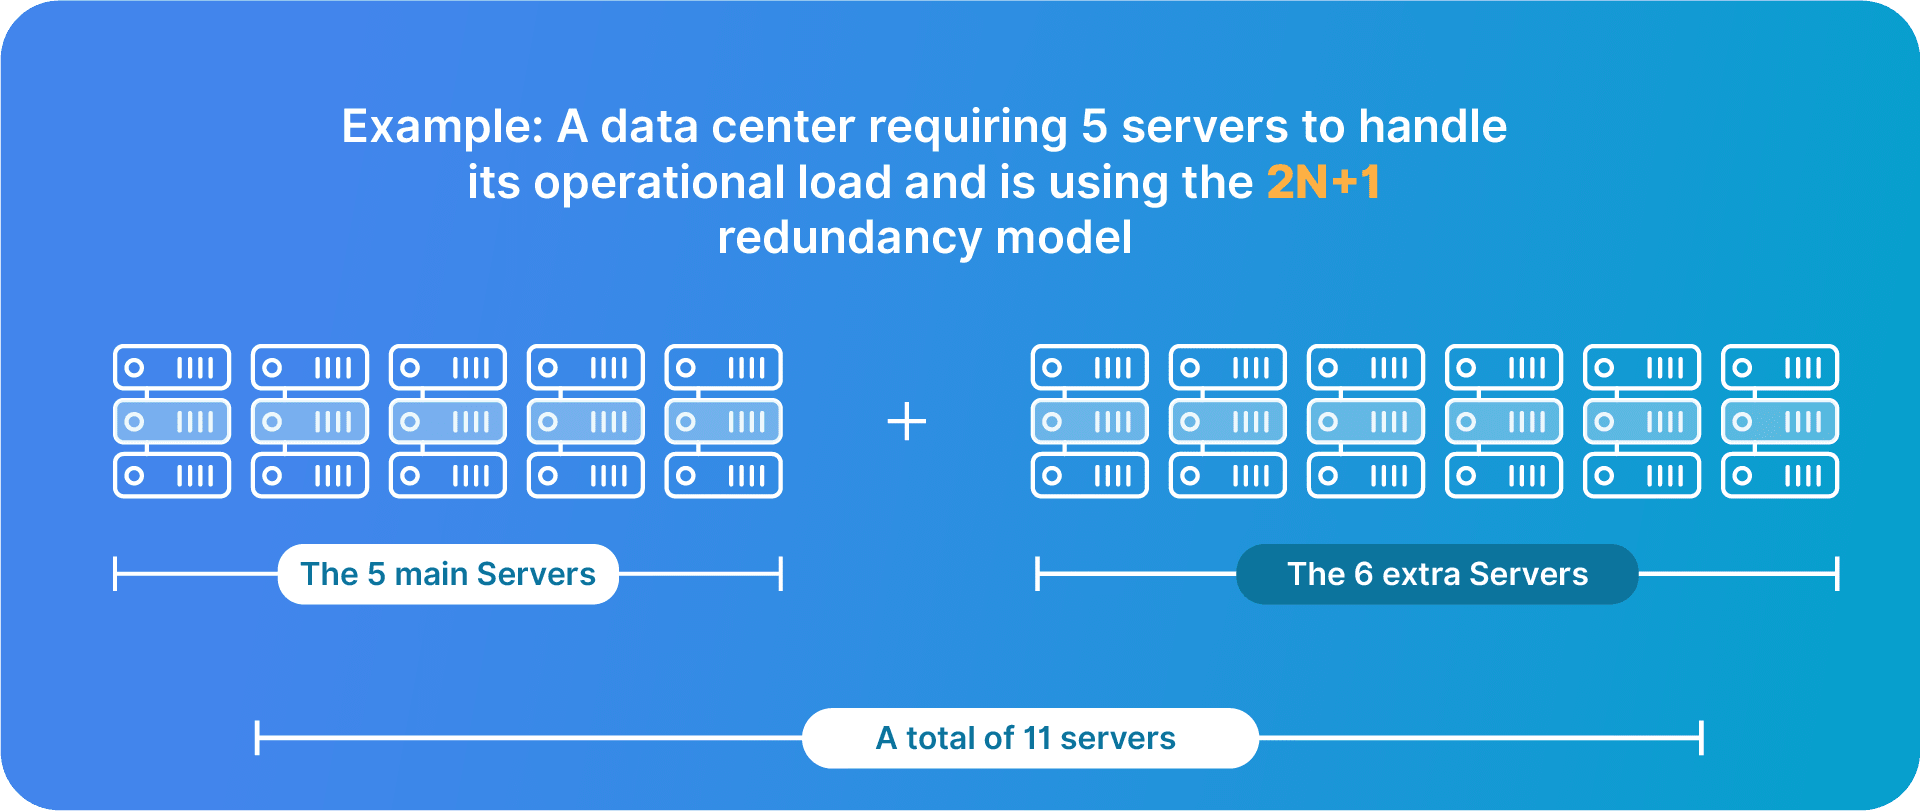 The 2N+1 model for data center redundancy.